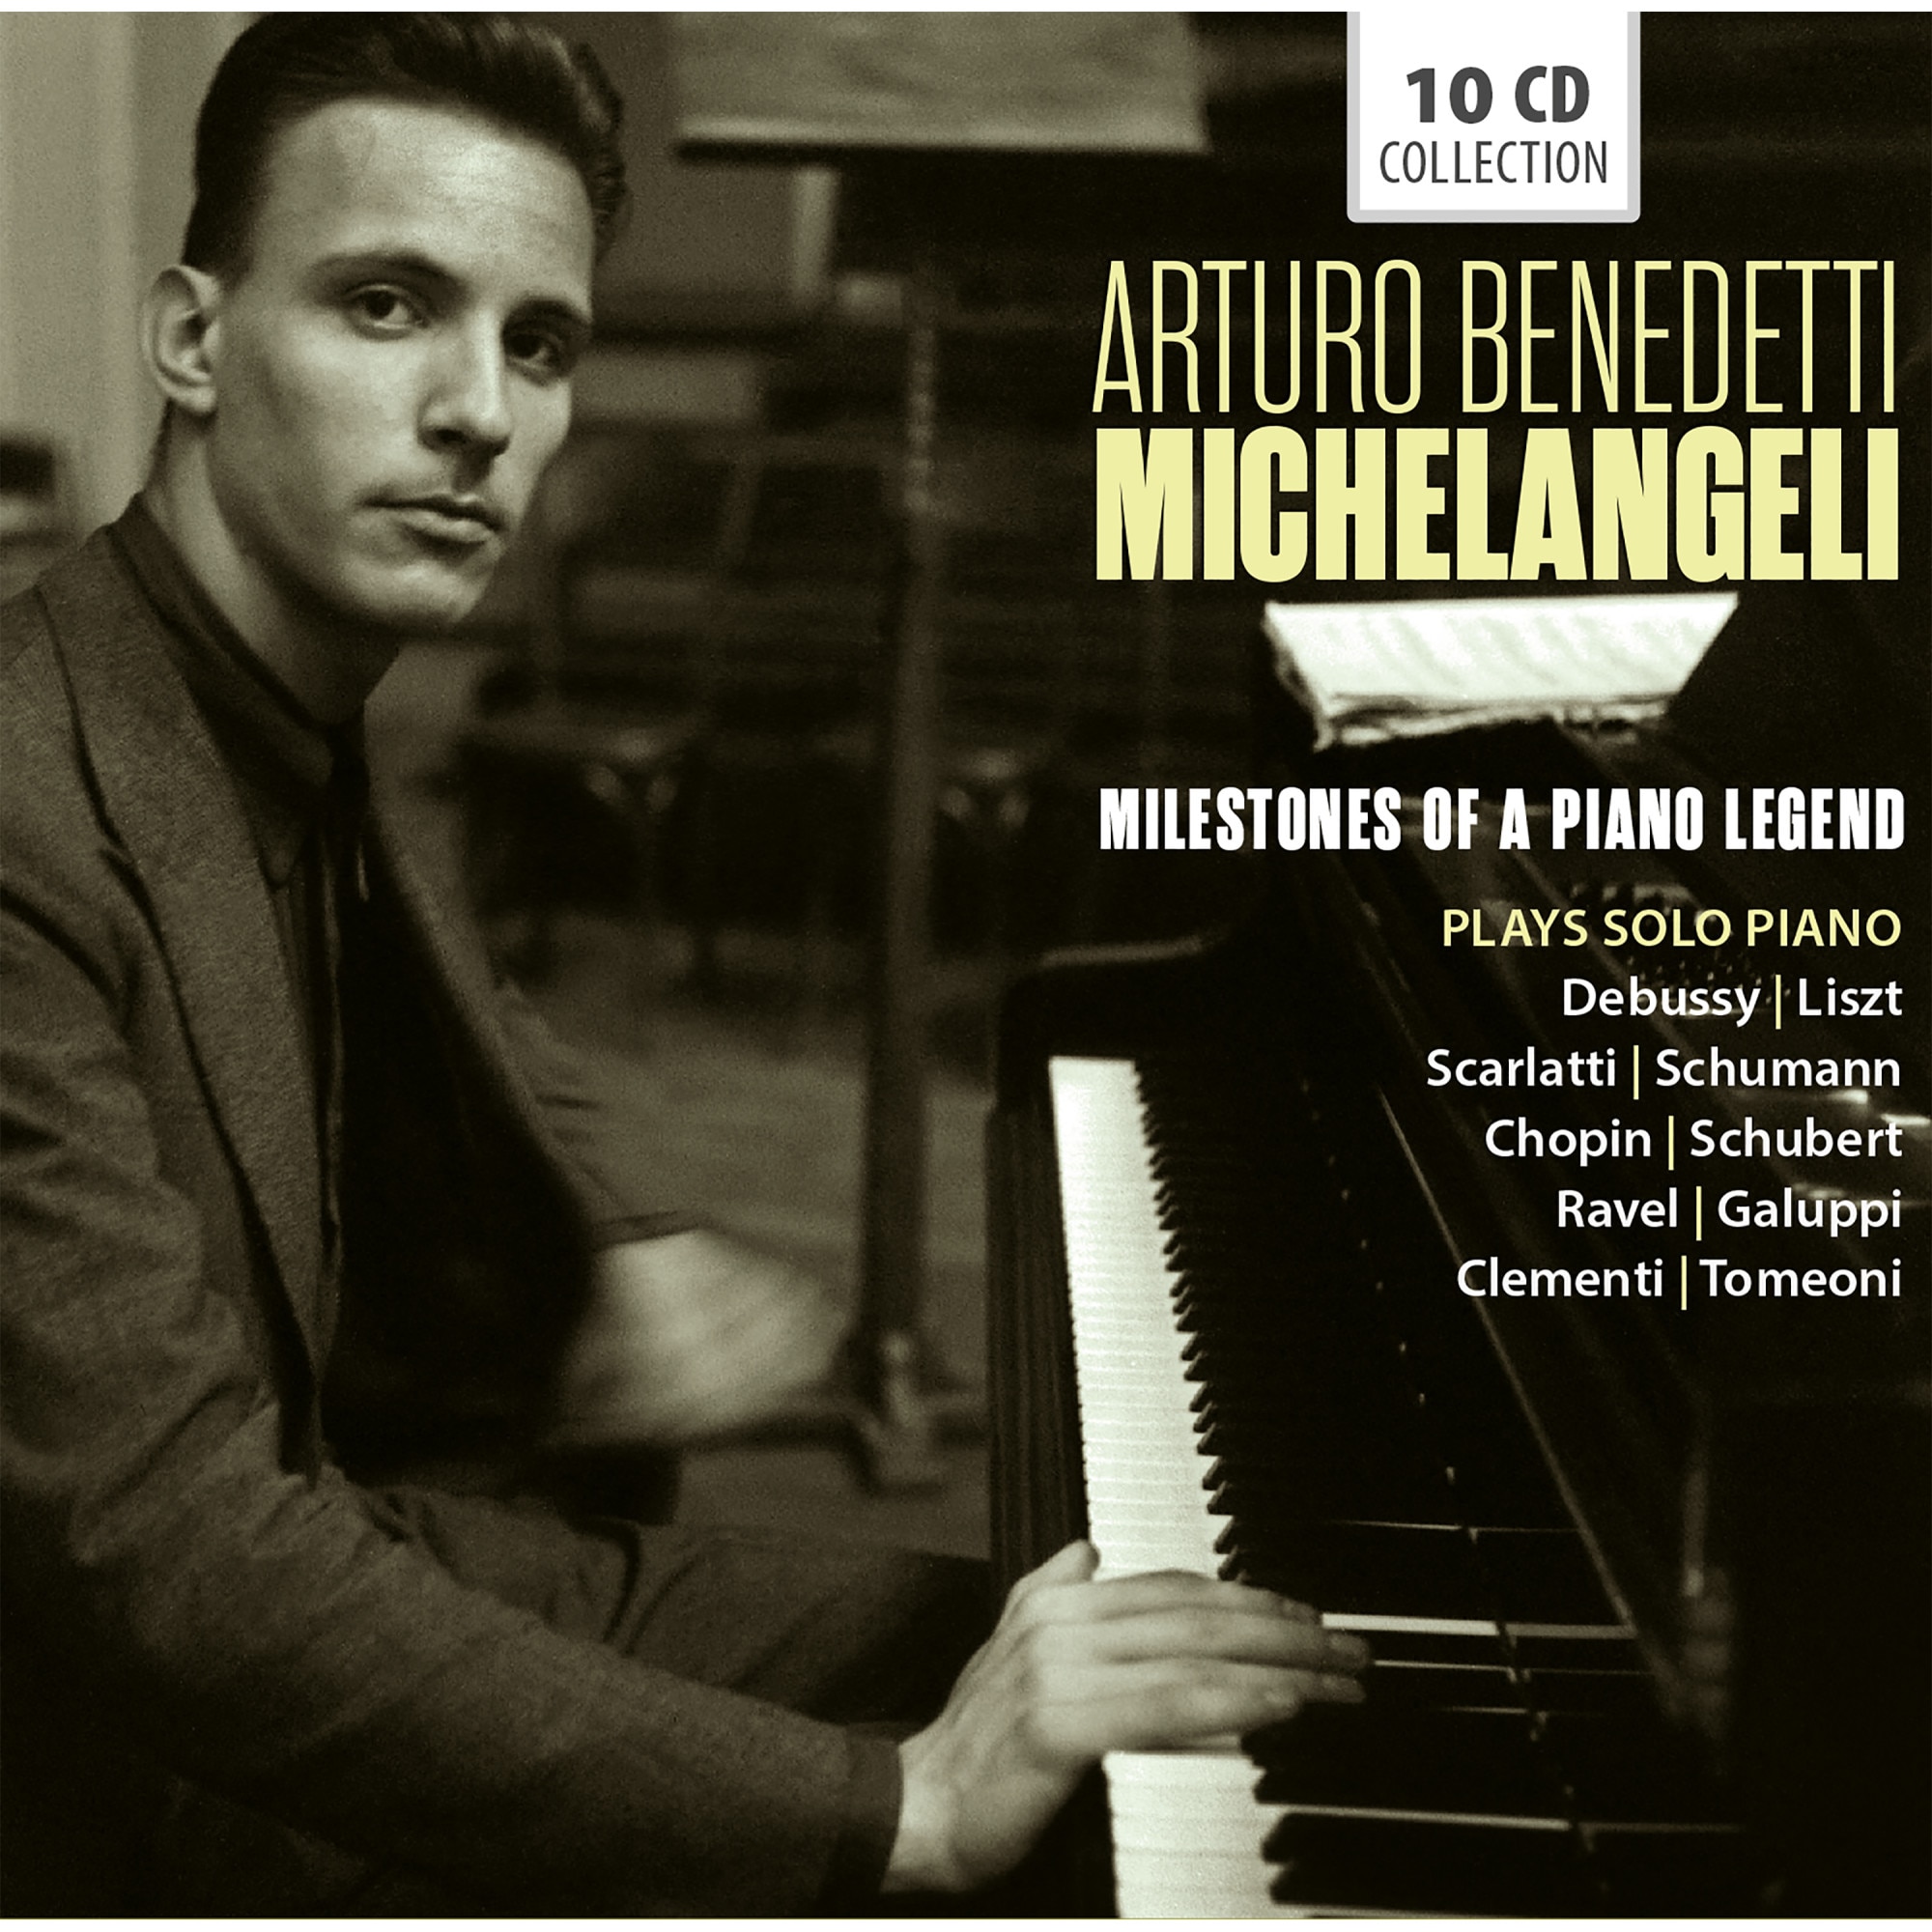 Arturo　Milestones　Legend　Benedetti　a　Piano　Michelangeli　of　(10CD)